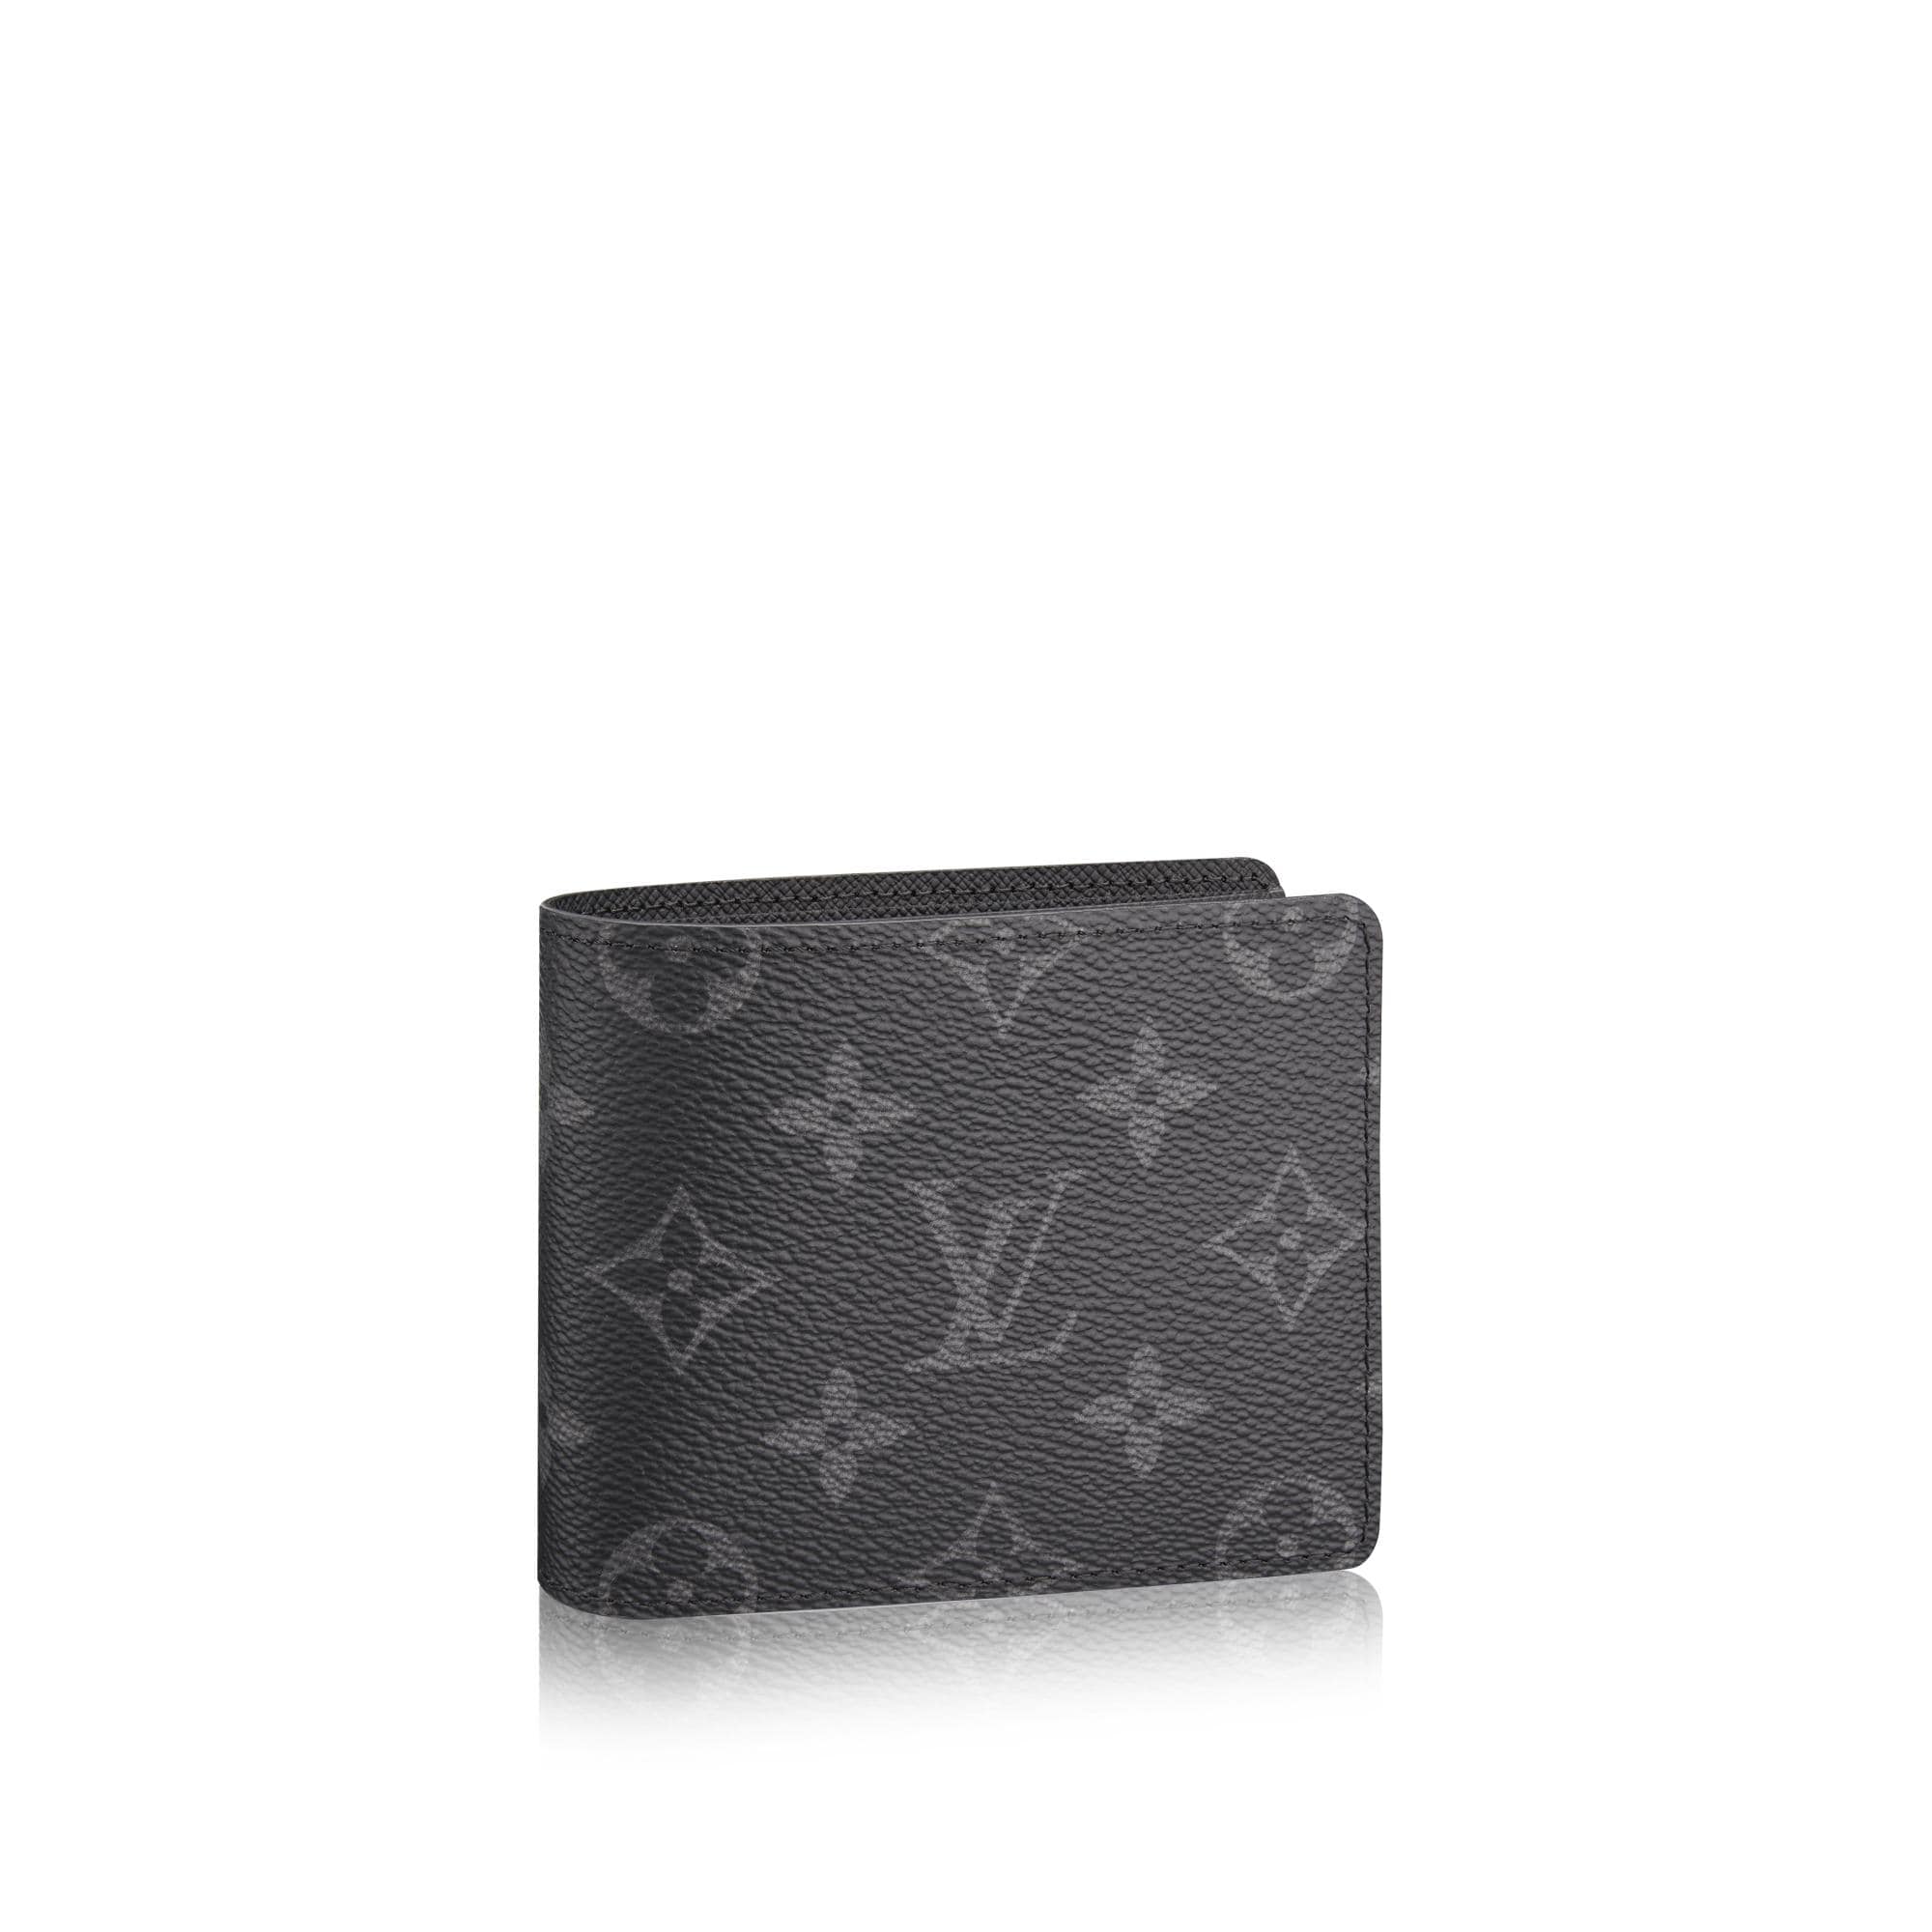 Louis Vuitton M63025 Kim Jones Monogram eclipse split multiple wallet - Louis  Vuitton